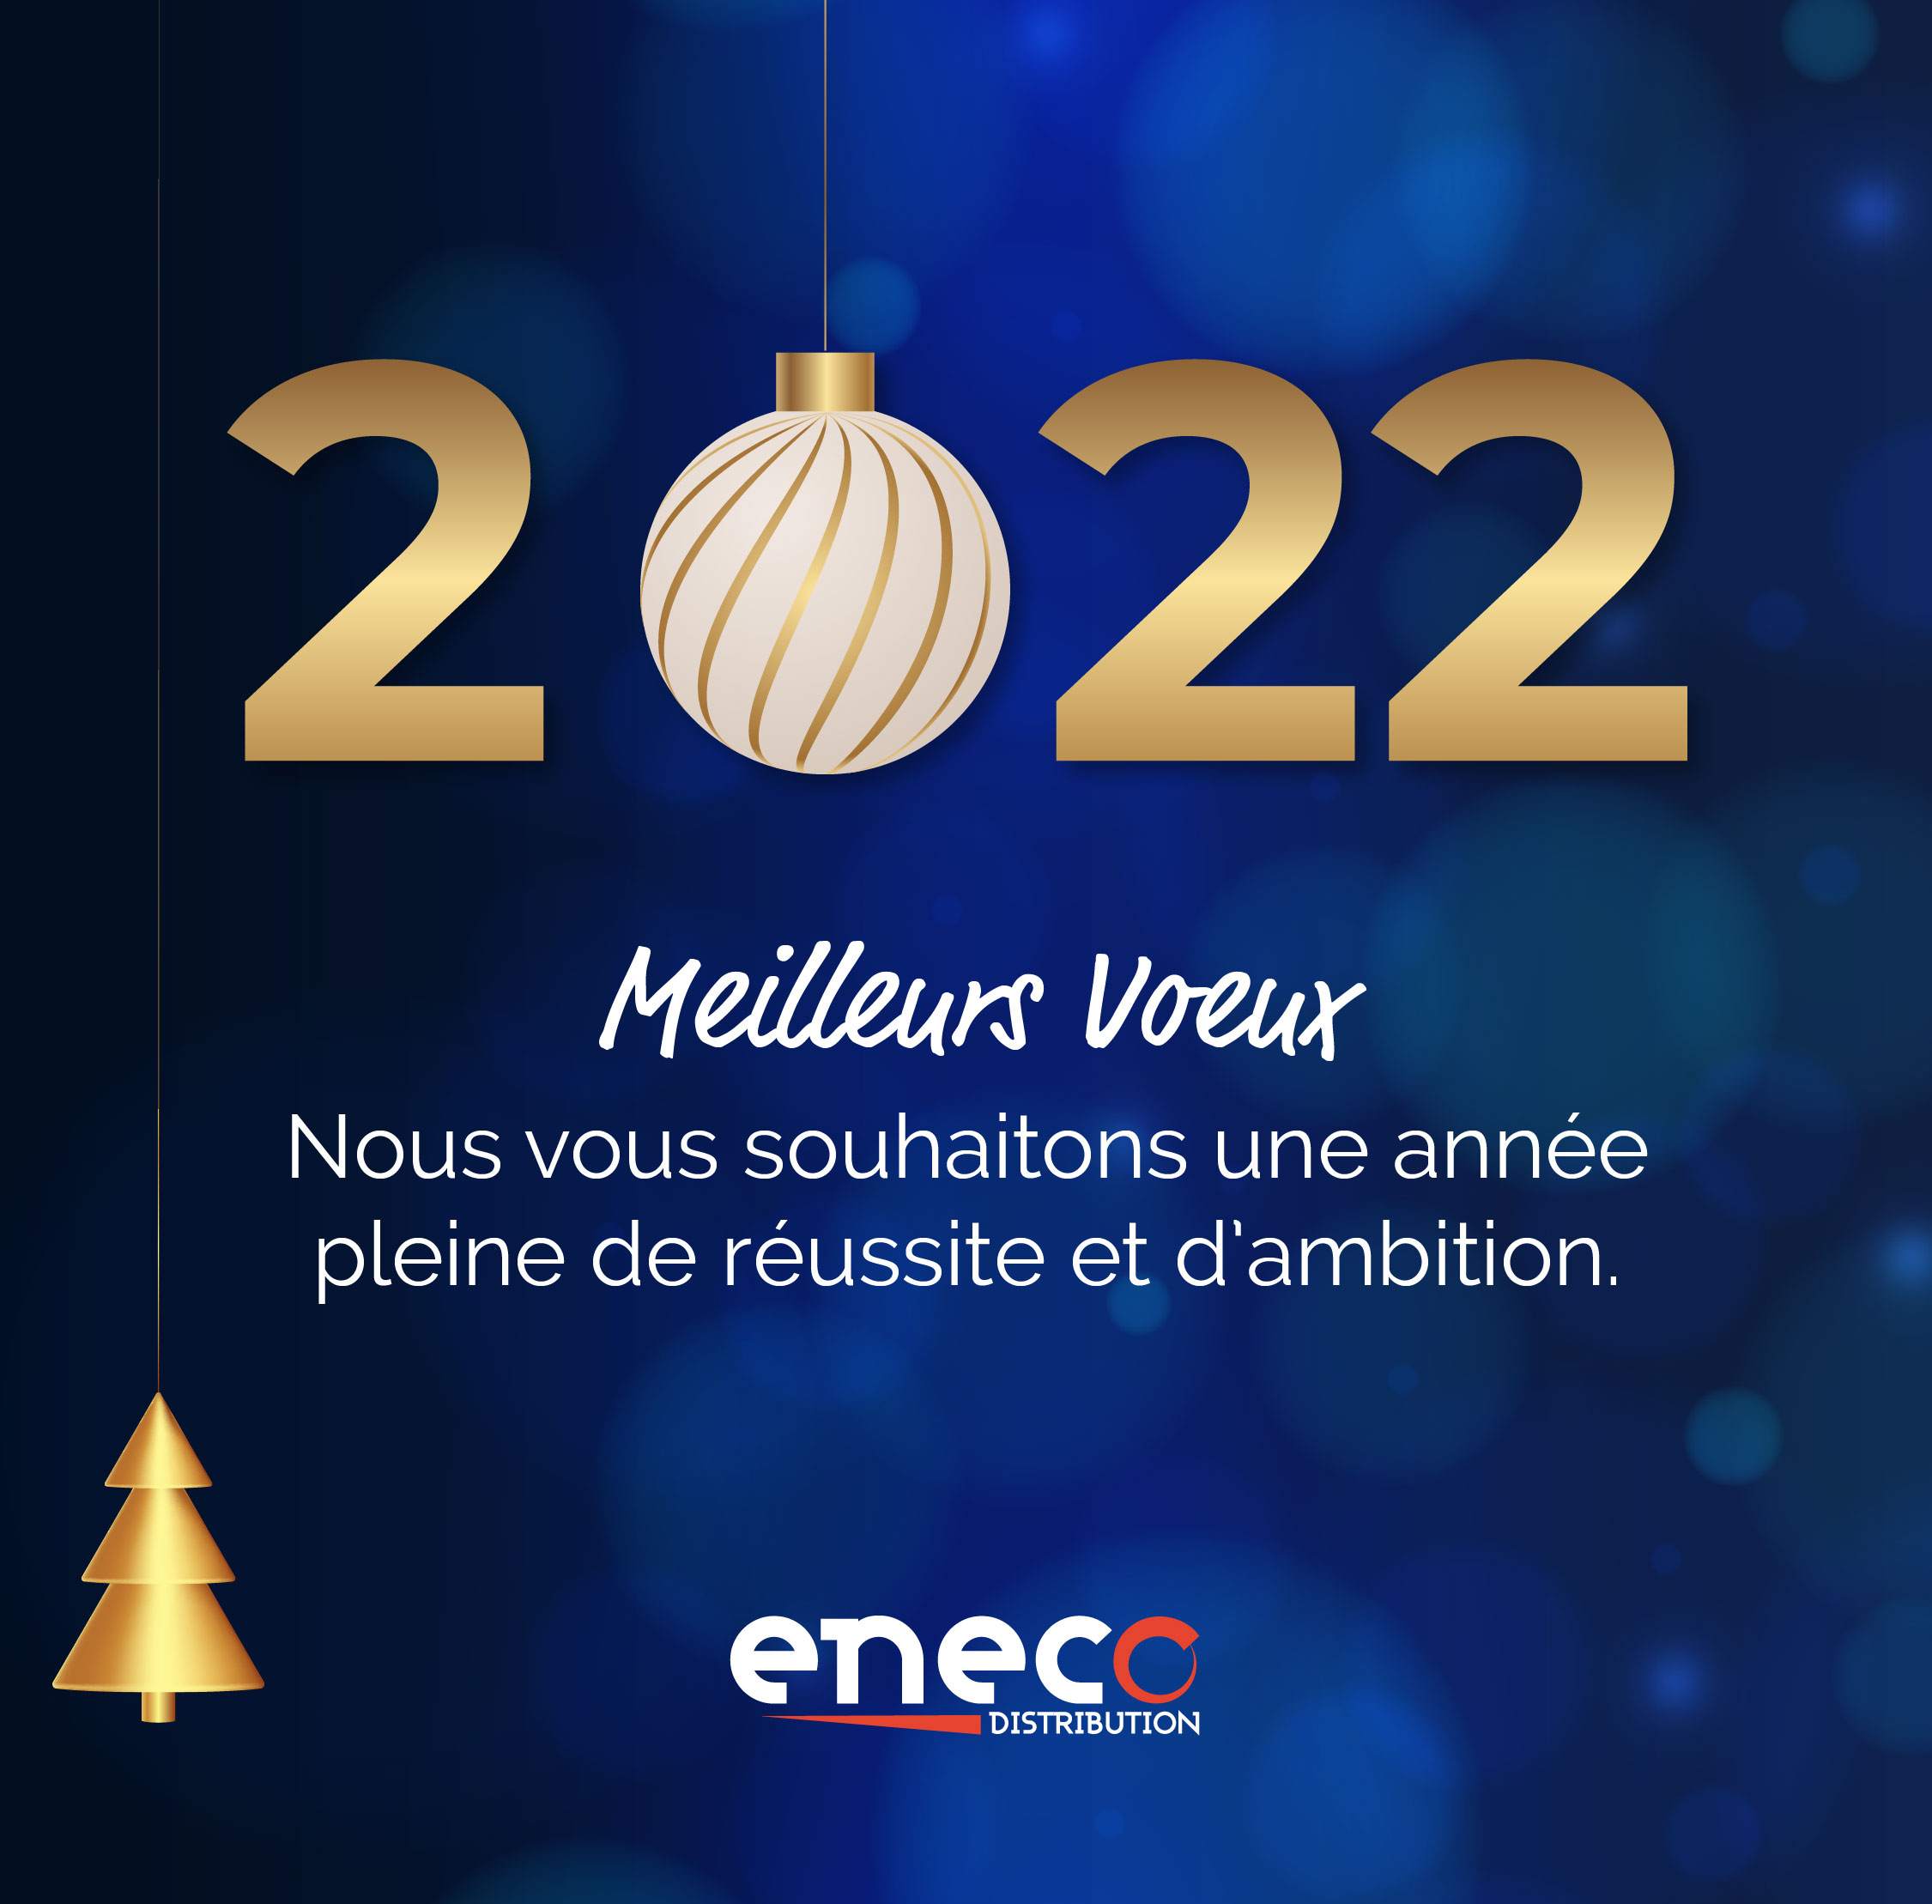 eneco-voeux-2022